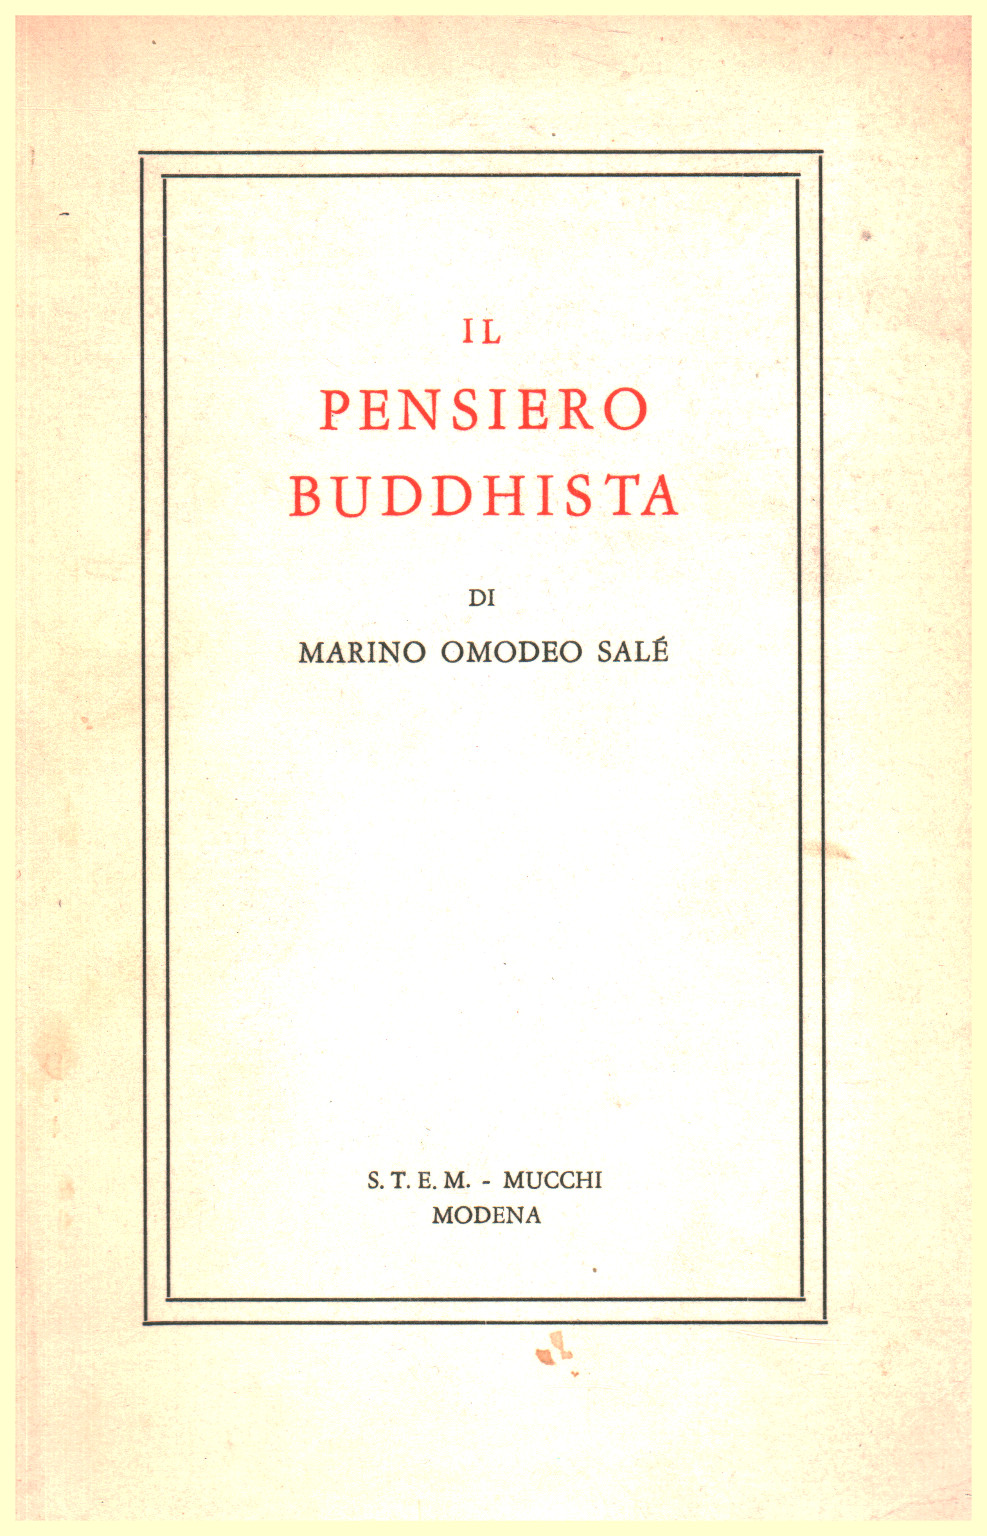 Il pensiero Buddhista, s.a.